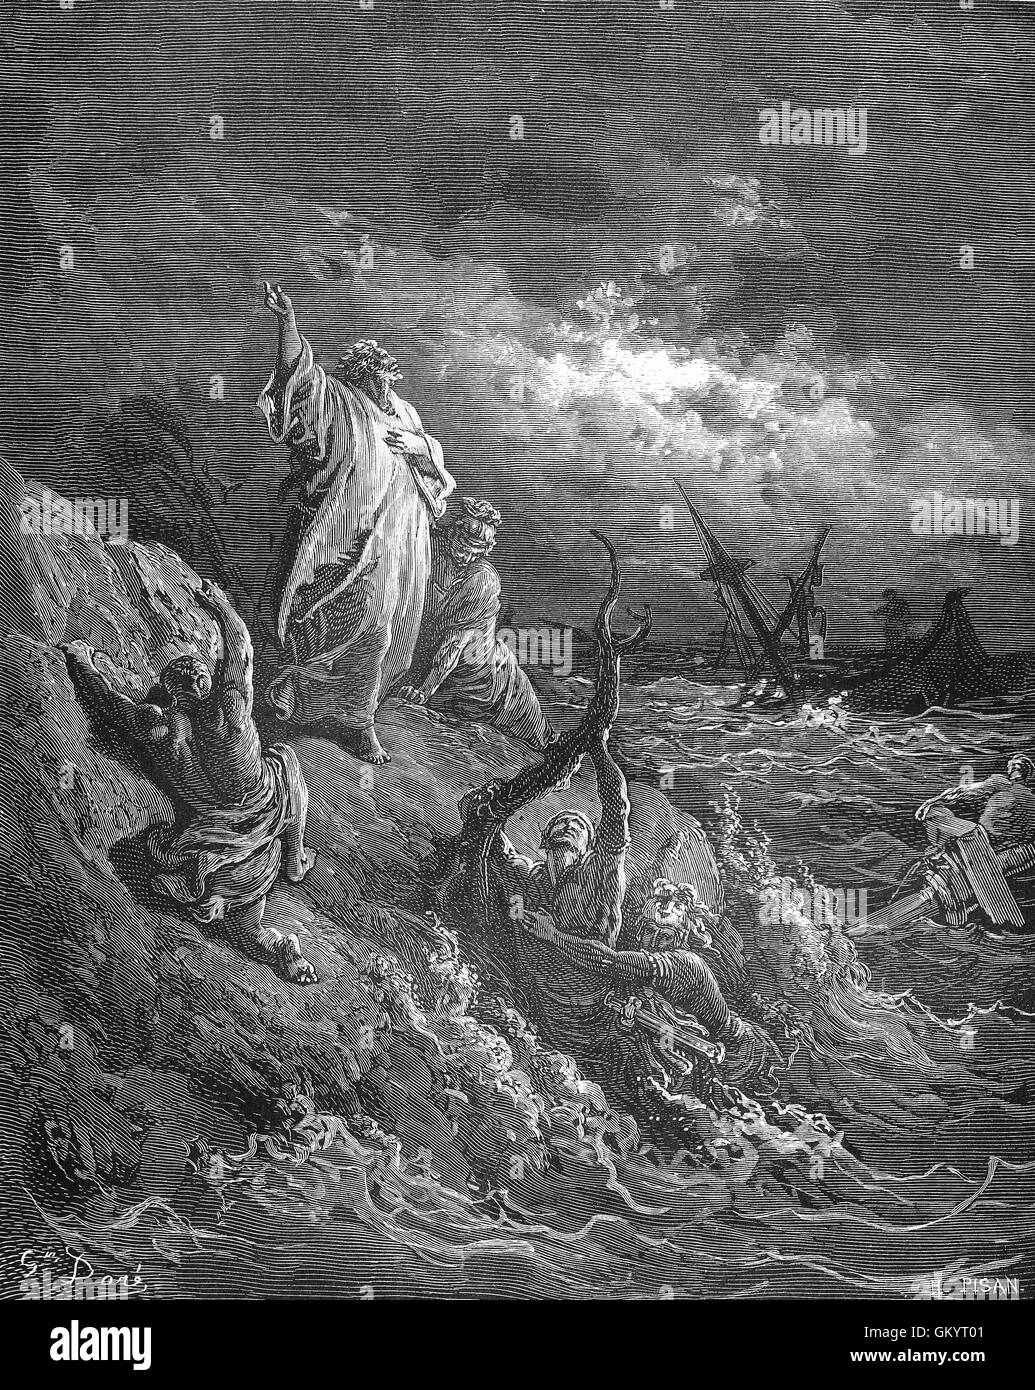 Grabado de San Pablo naufragó por Gustave Doré Foto de stock